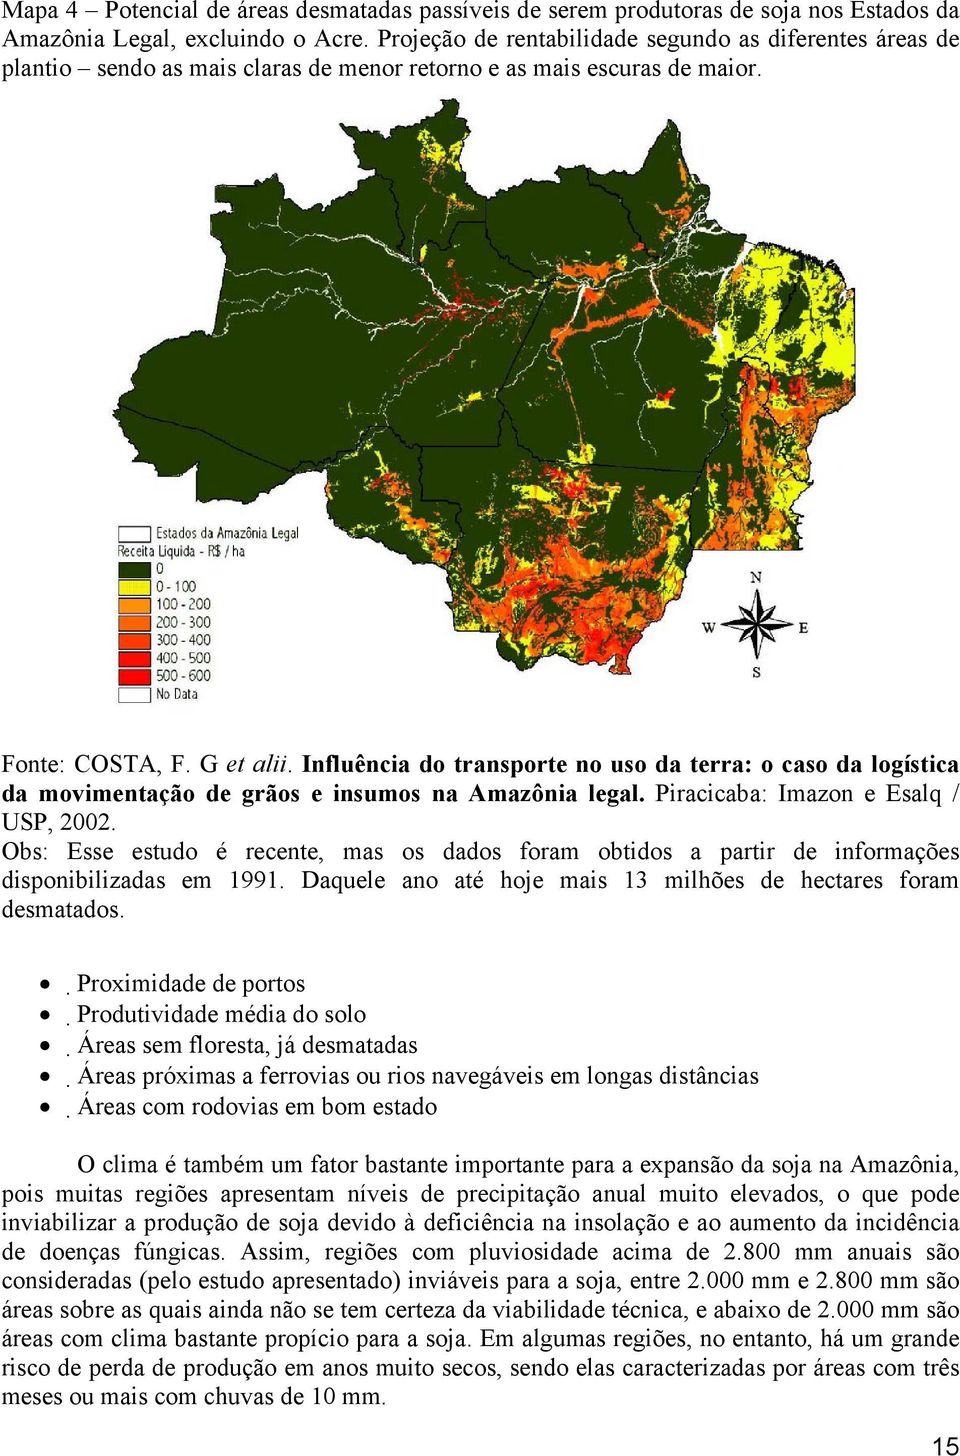 Influência do transporte no uso da terra: o caso da logística da movimentação de grãos e insumos na Amazônia legal. Piracicaba: Imazon e Esalq / USP, 2002.